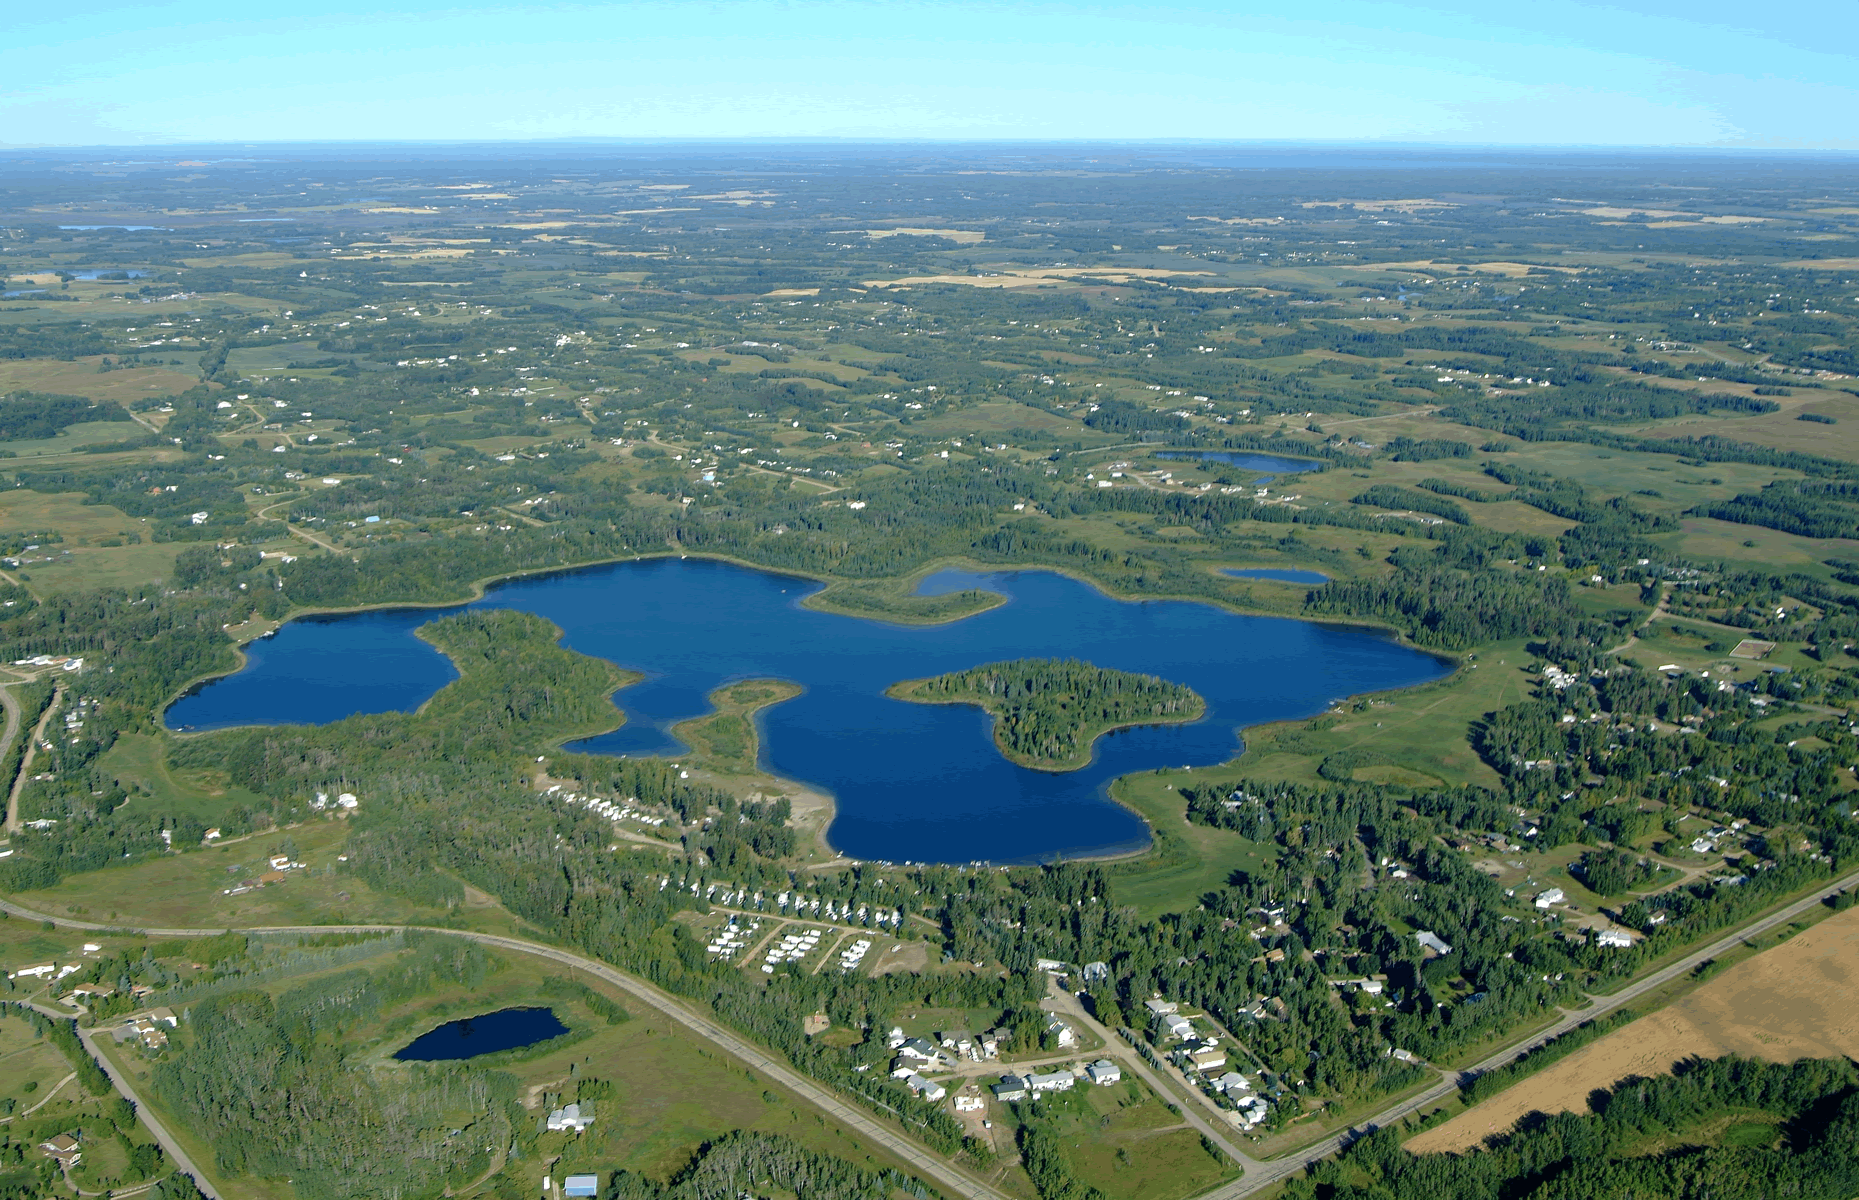 Spring Lake RV Resort